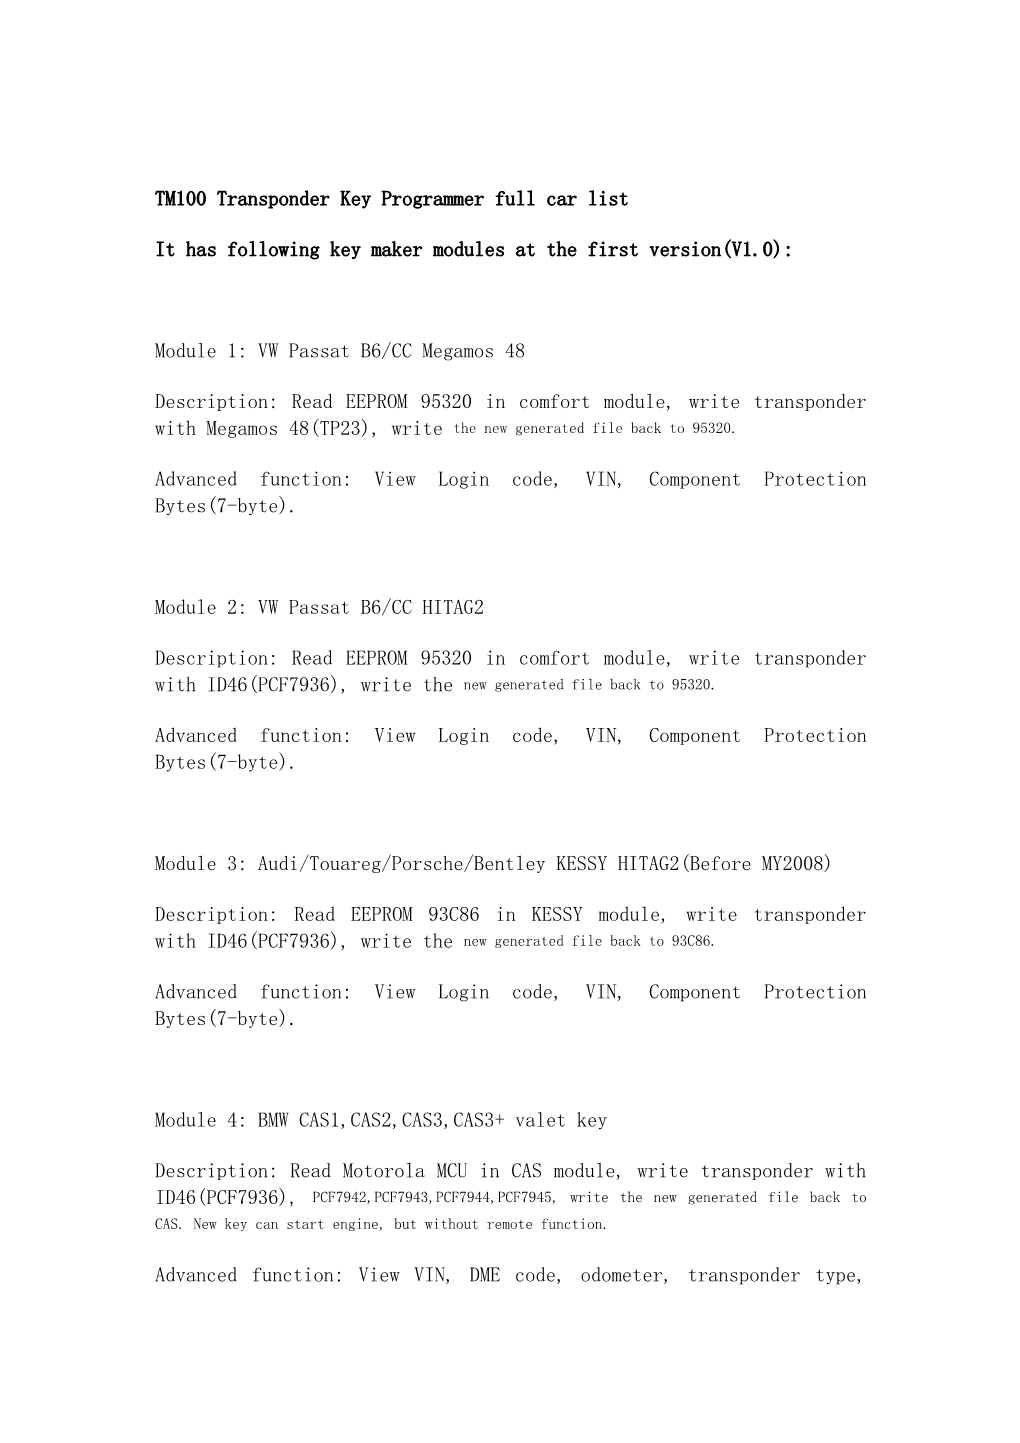 TM100 Transponder Key Programmer Full Car List